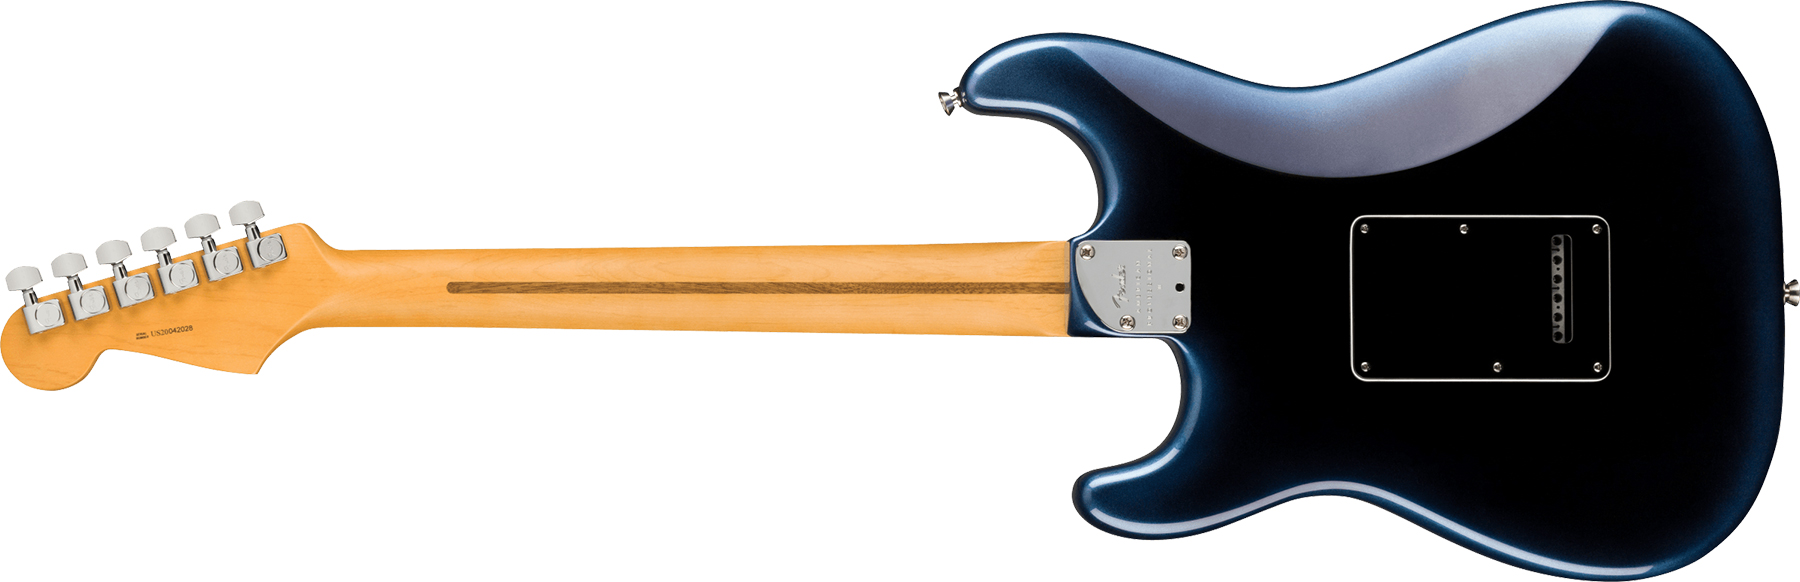 Fender Strat American Professional Ii Usa Rw - Dark Night - Guitarra eléctrica con forma de str. - Variation 1